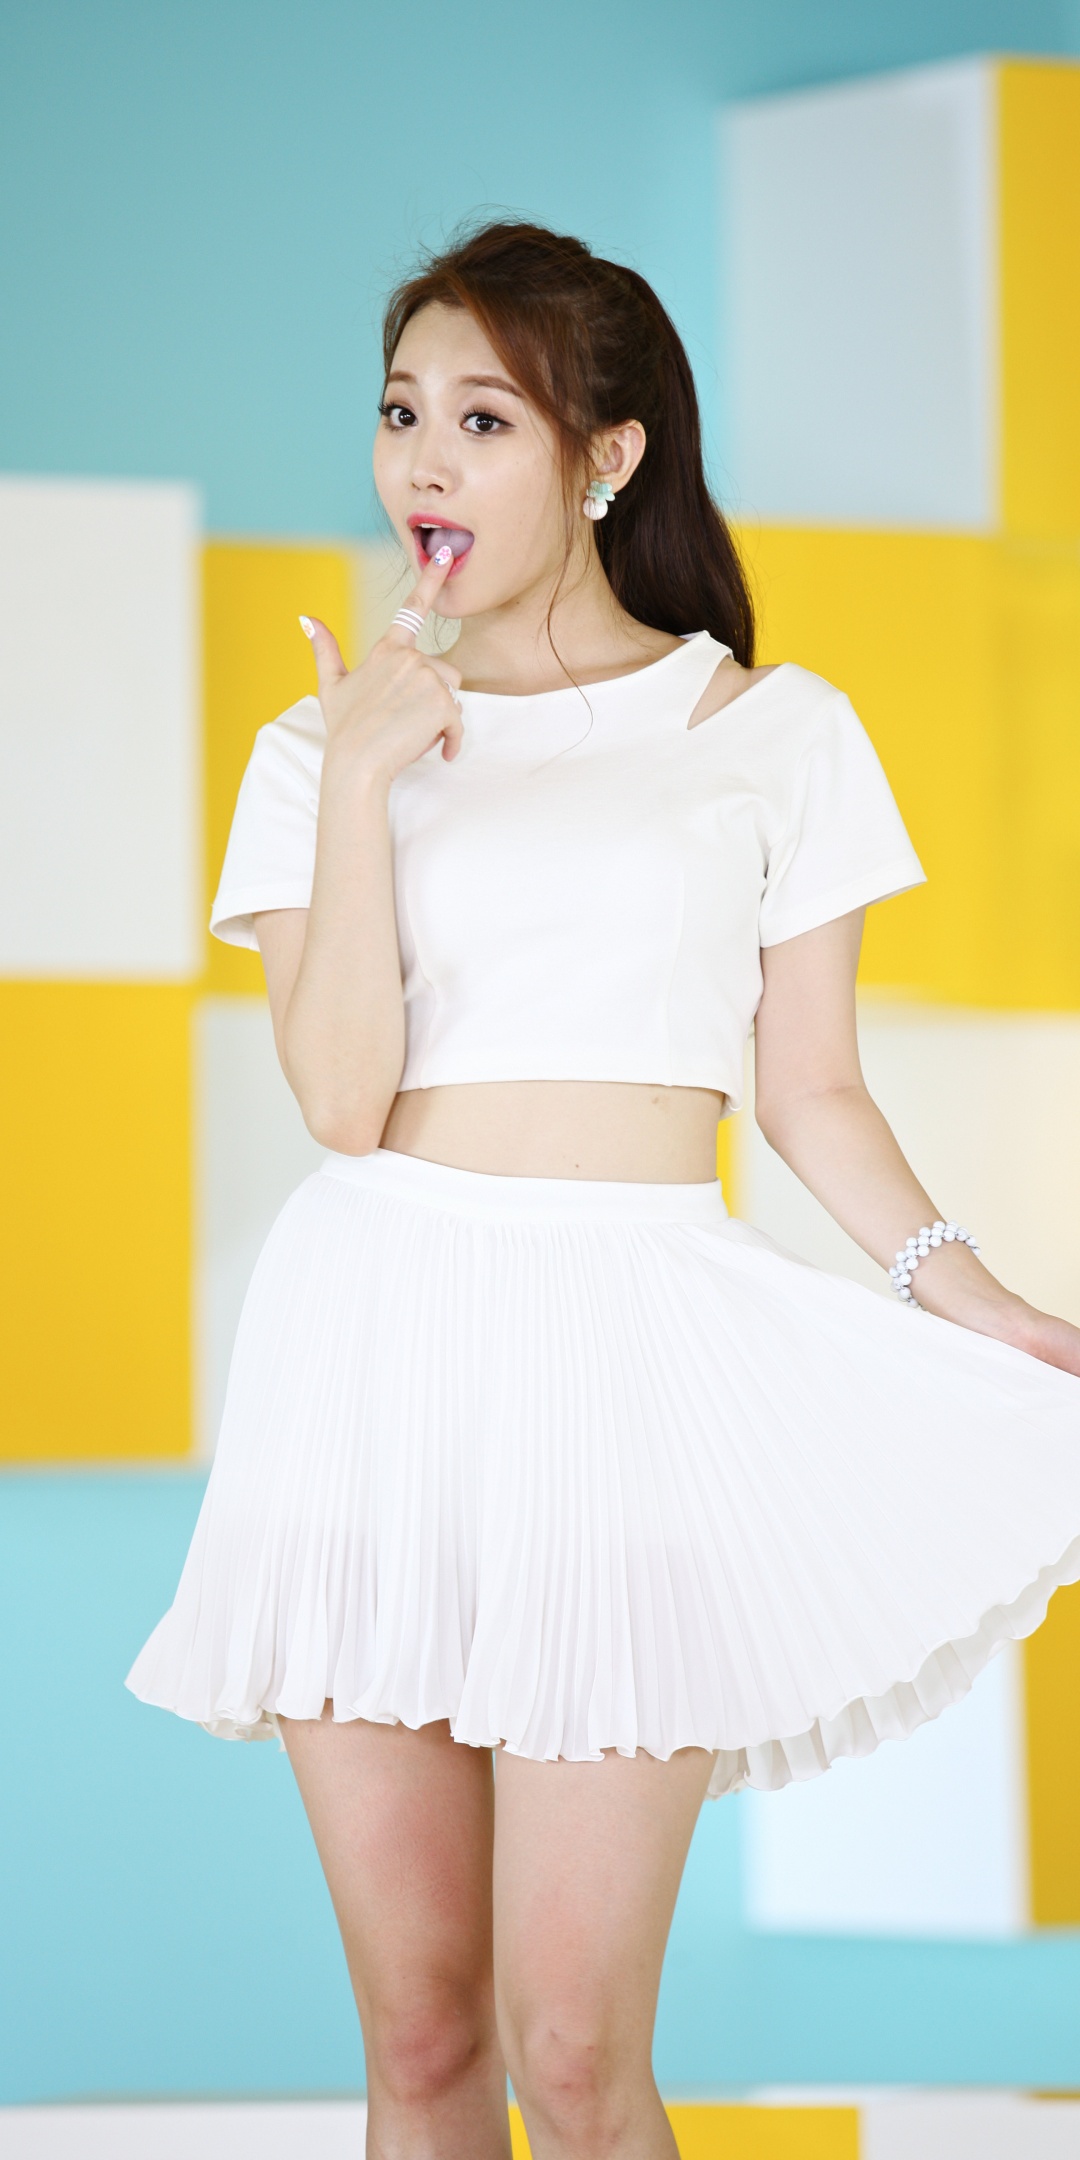 Yura Wallpaper 4k K Pop Singer Korean Singer